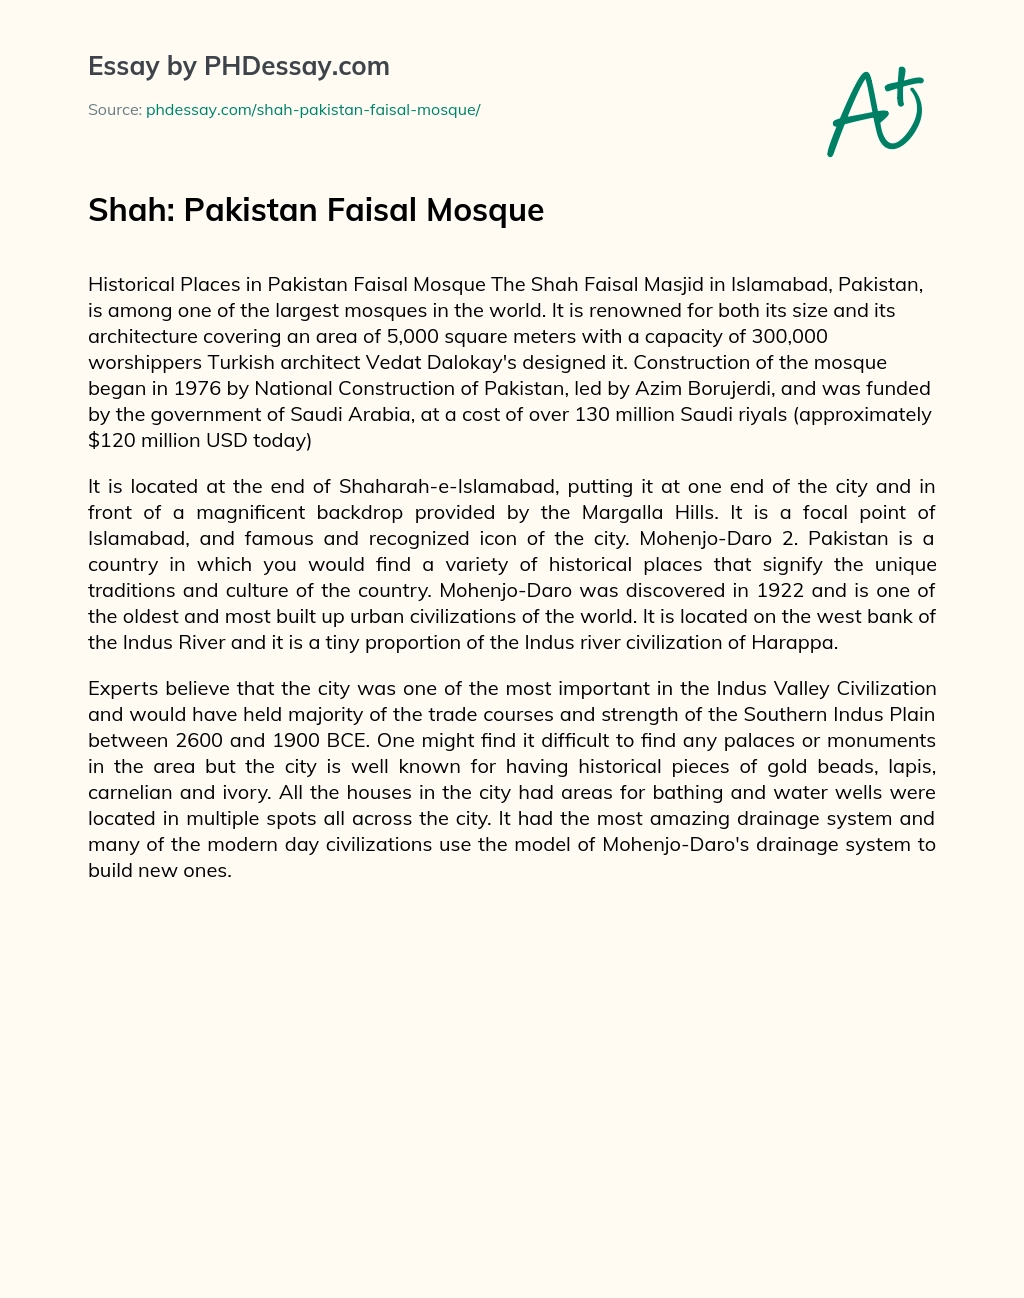 Shah: Pakistan Faisal Mosque essay